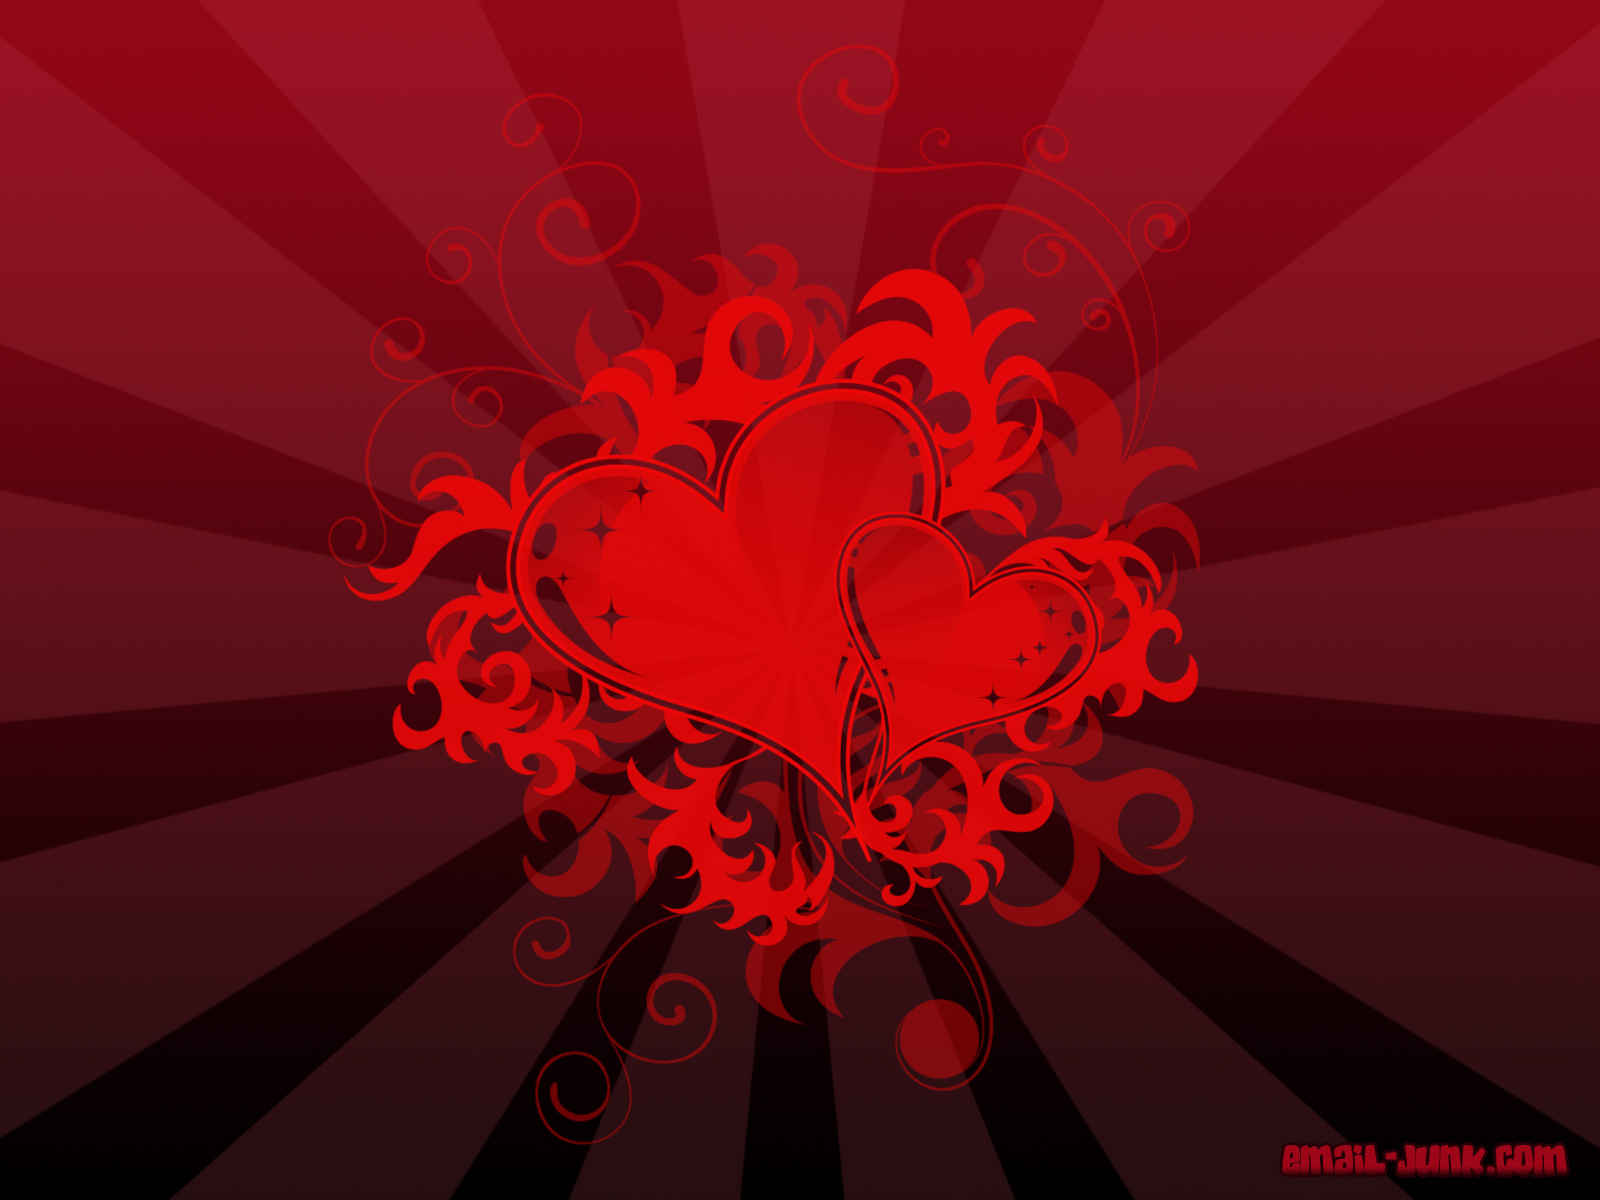 cuore live wallpaper,rosso,arte frattale,disegno grafico,grafica,modello